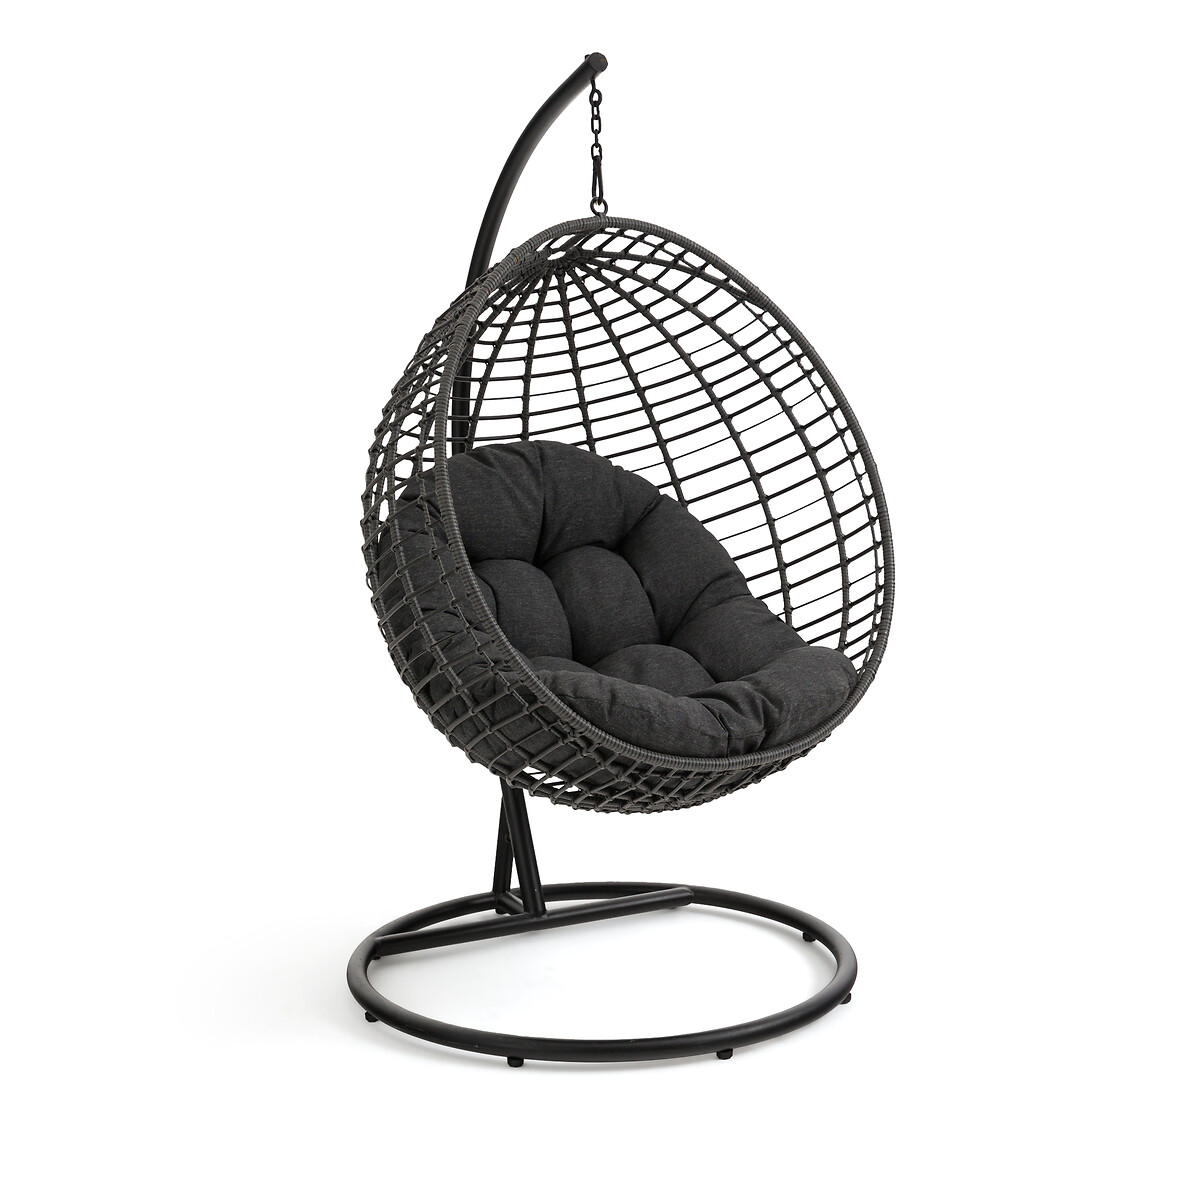 Кресло садовое подвесное Missa единый размер черный кресло для сада подвесное irati единый размер бежевый